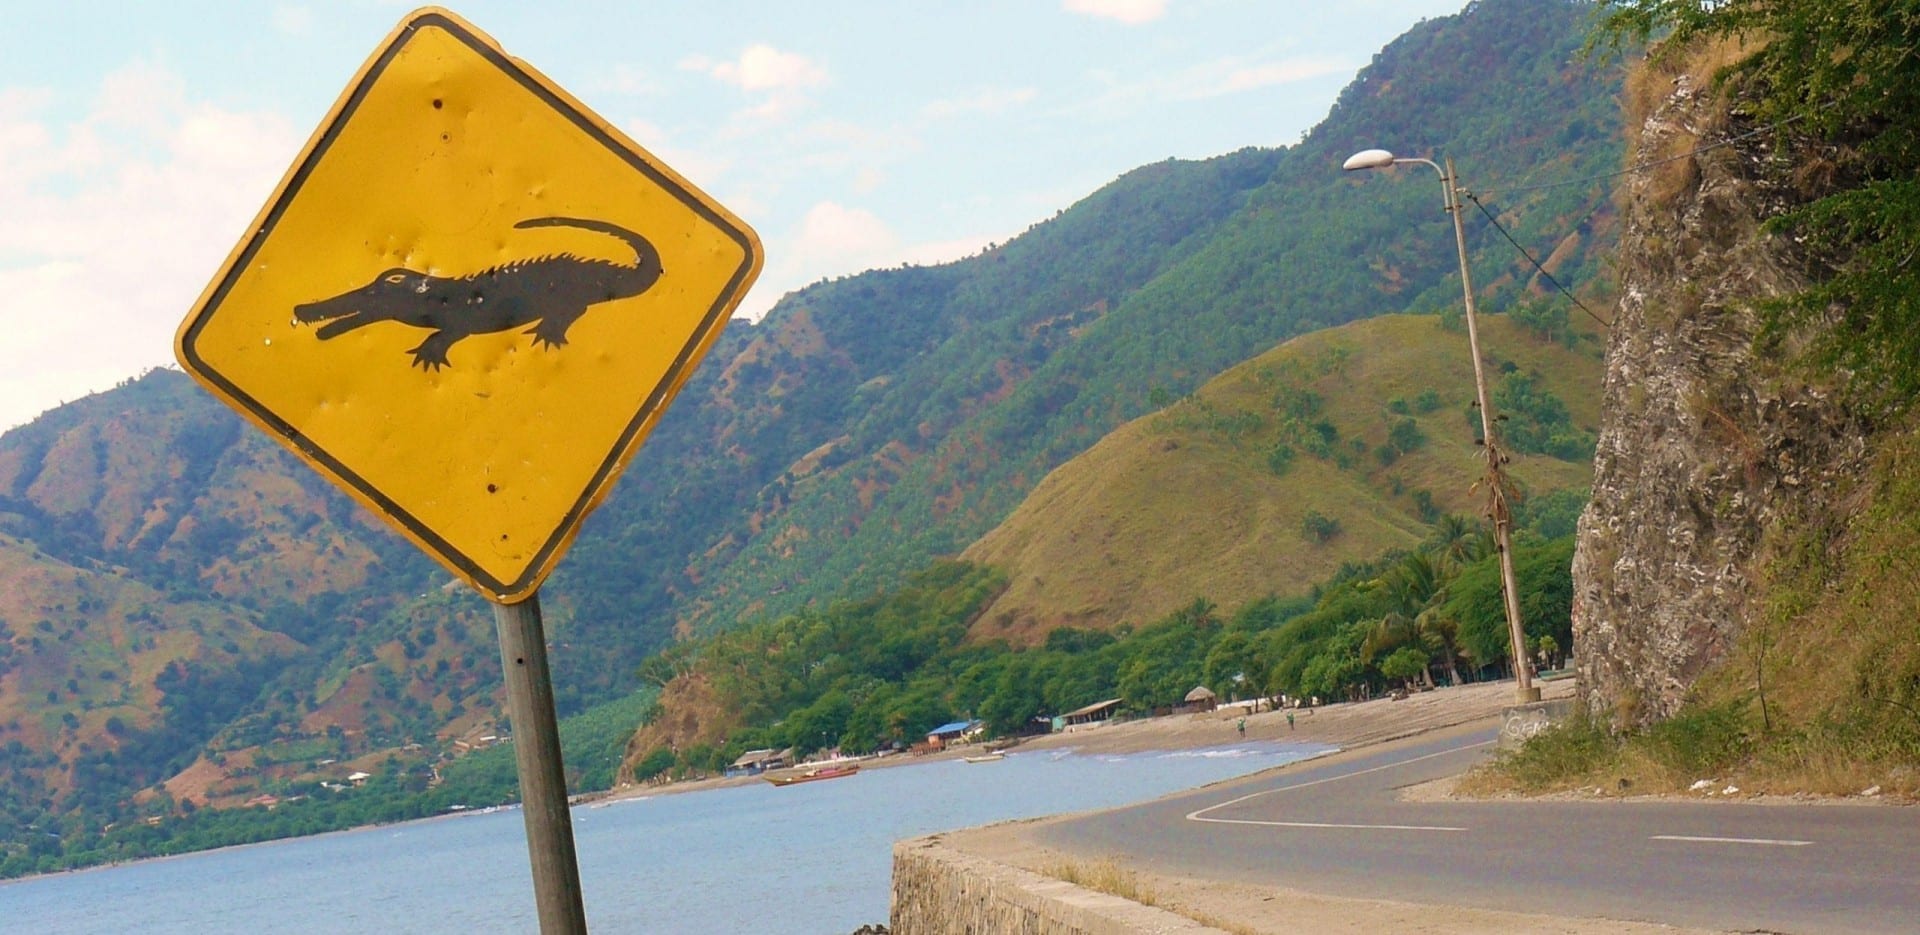 Advertencia de cocodrilo en la ciudad de Dili Timor Oriental